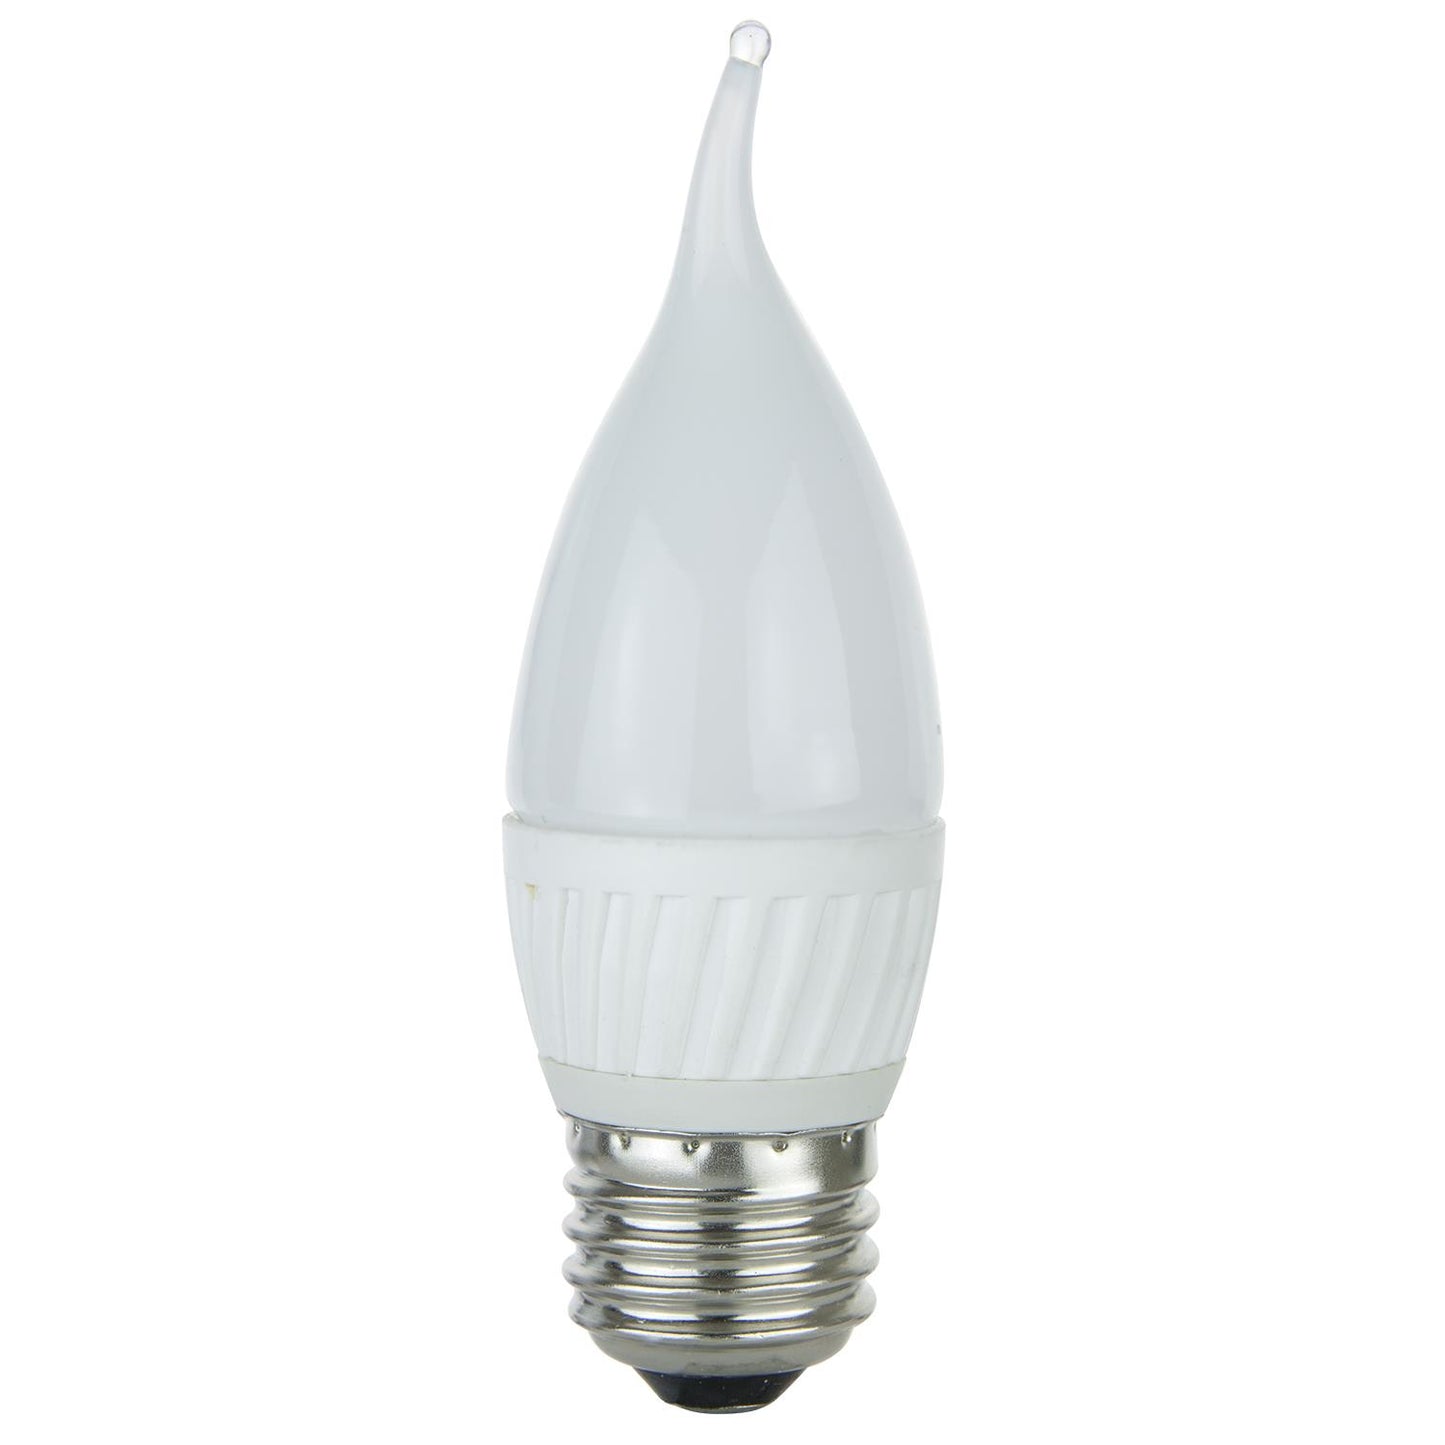 Sunlite Flame Tip Chandelier, 320 Lumens, Medium Base Light Bulb, Warm White